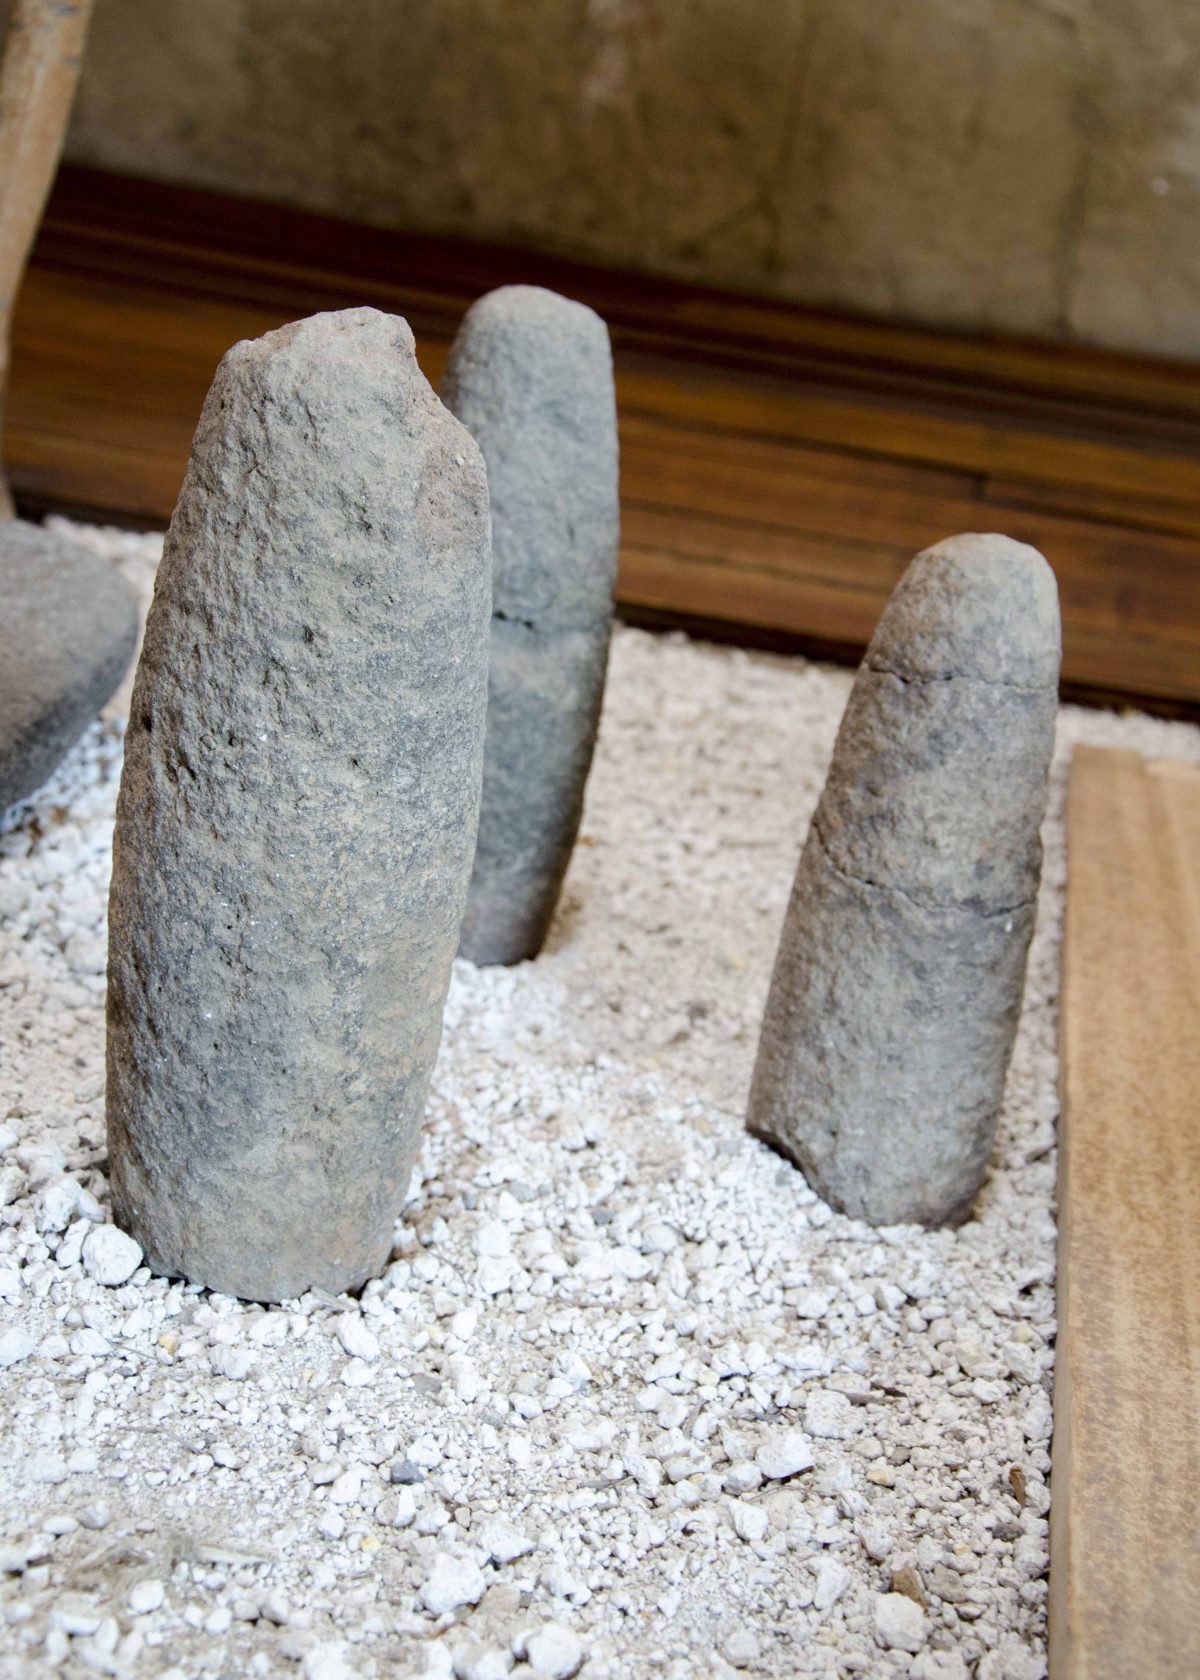 Original Stones from Lunar or Solar Calendar, Cochasquí, Ecuador | ©Angela Drake / Not Your Average American